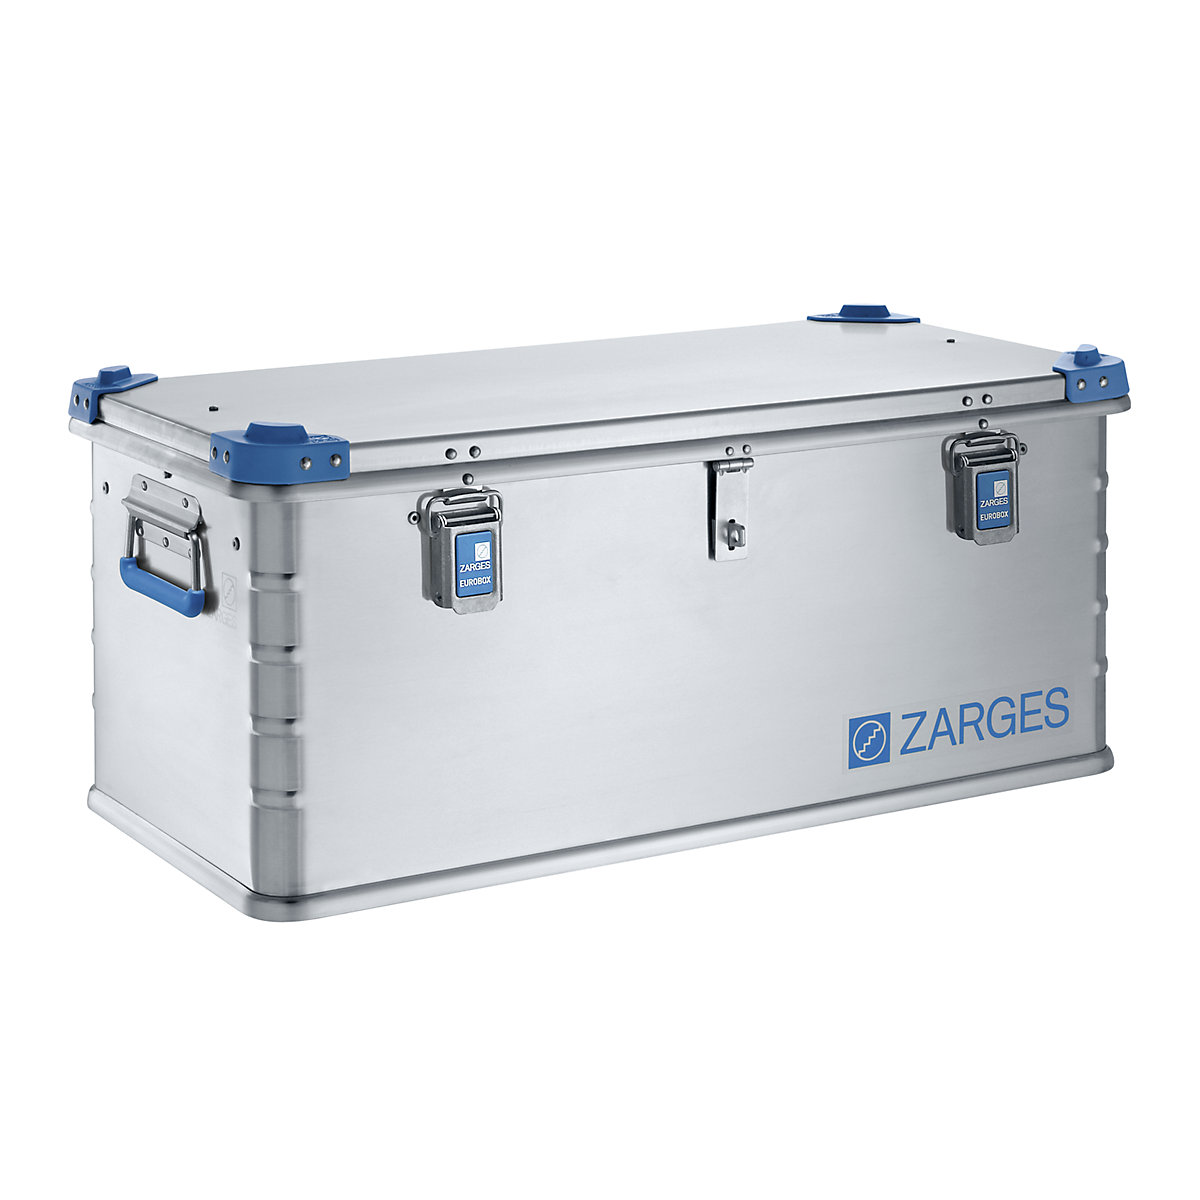 Aluminijska EURO kutija za alat – ZARGES, s mogućnošću slaganja, volumen 81 l-2